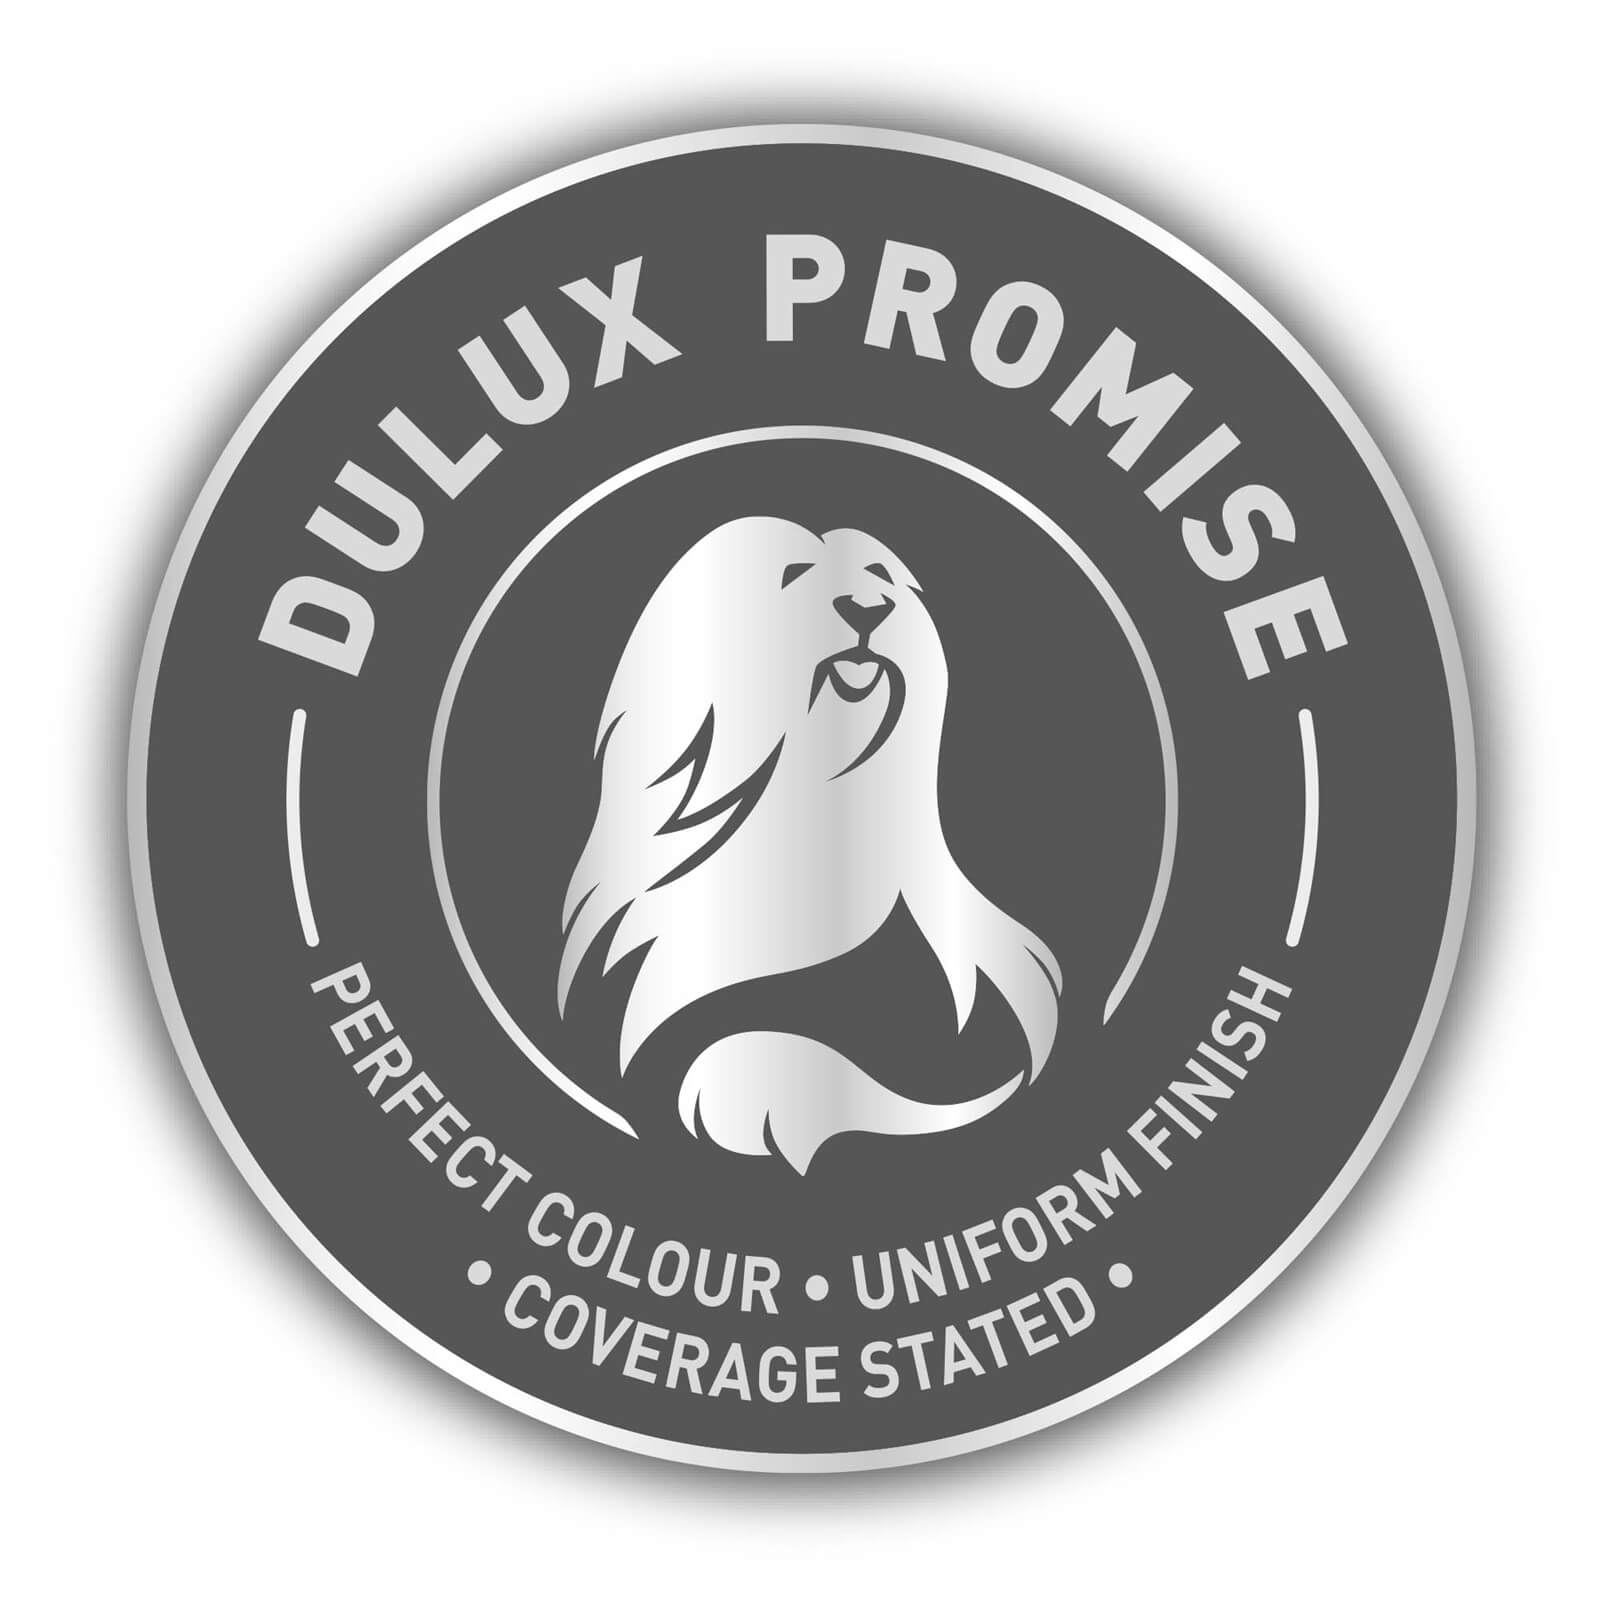 Dulux Easycare Washable & Tough Matt Paint Overtly Olive - 2.5L